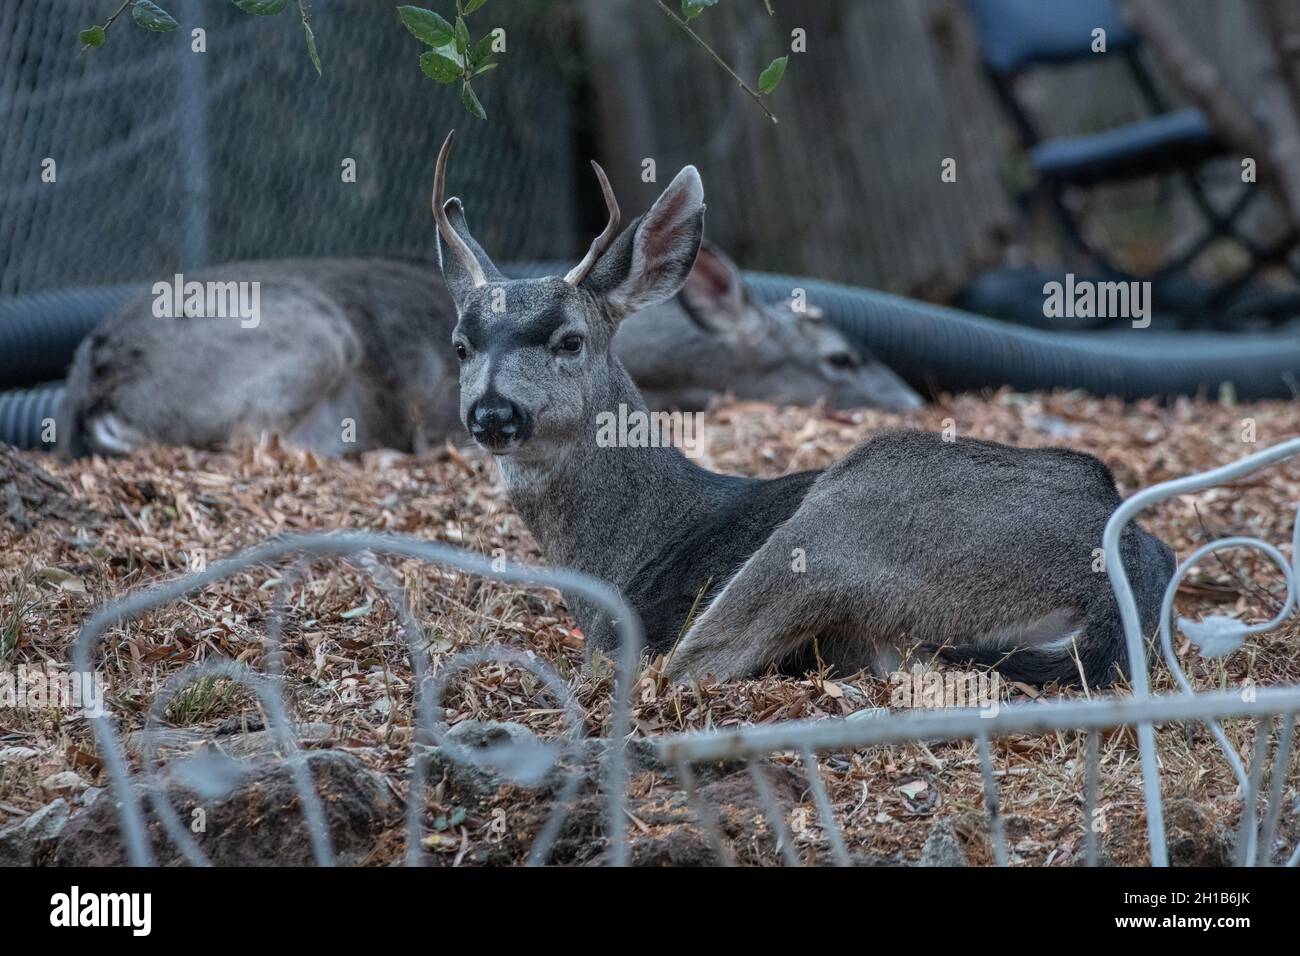 Une paire de cerfs de Virginie (Odocoileus hemionus columbianus) se sont coulés dans une cour de Berkeley, en Californie.Les cerfs sont des animaux sauvages urbains fréquents. Banque D'Images